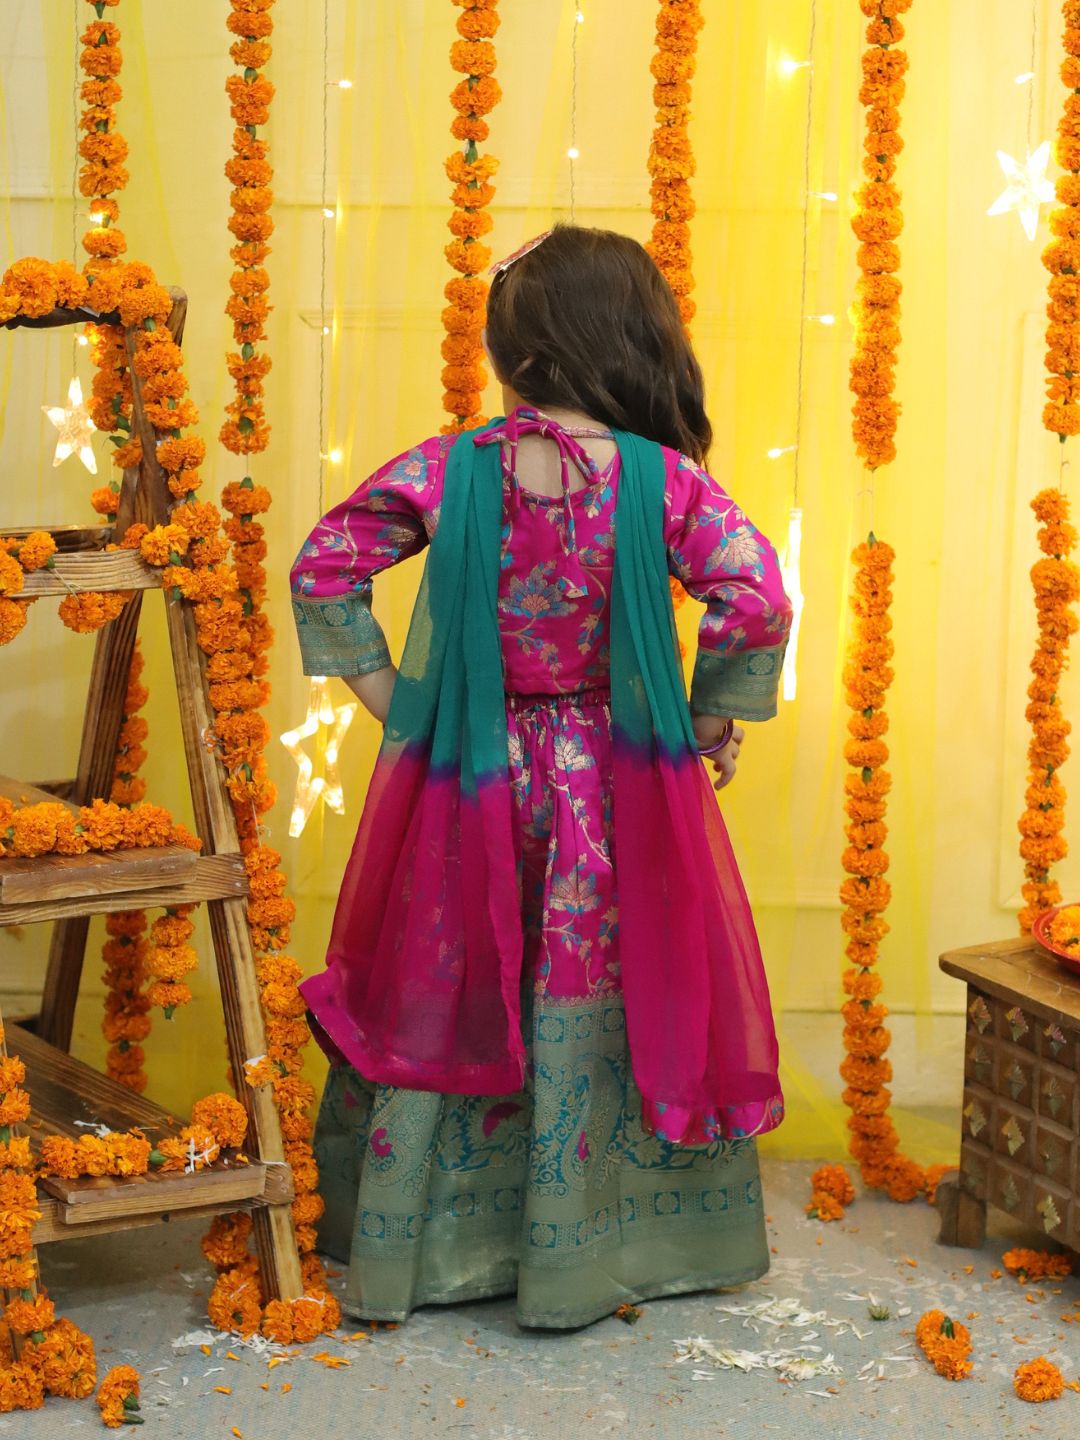 BownBee  Girls Ethic Traditional Indian Festive  Jacquard Choli Lehenga Choli with Dupatta- Pink